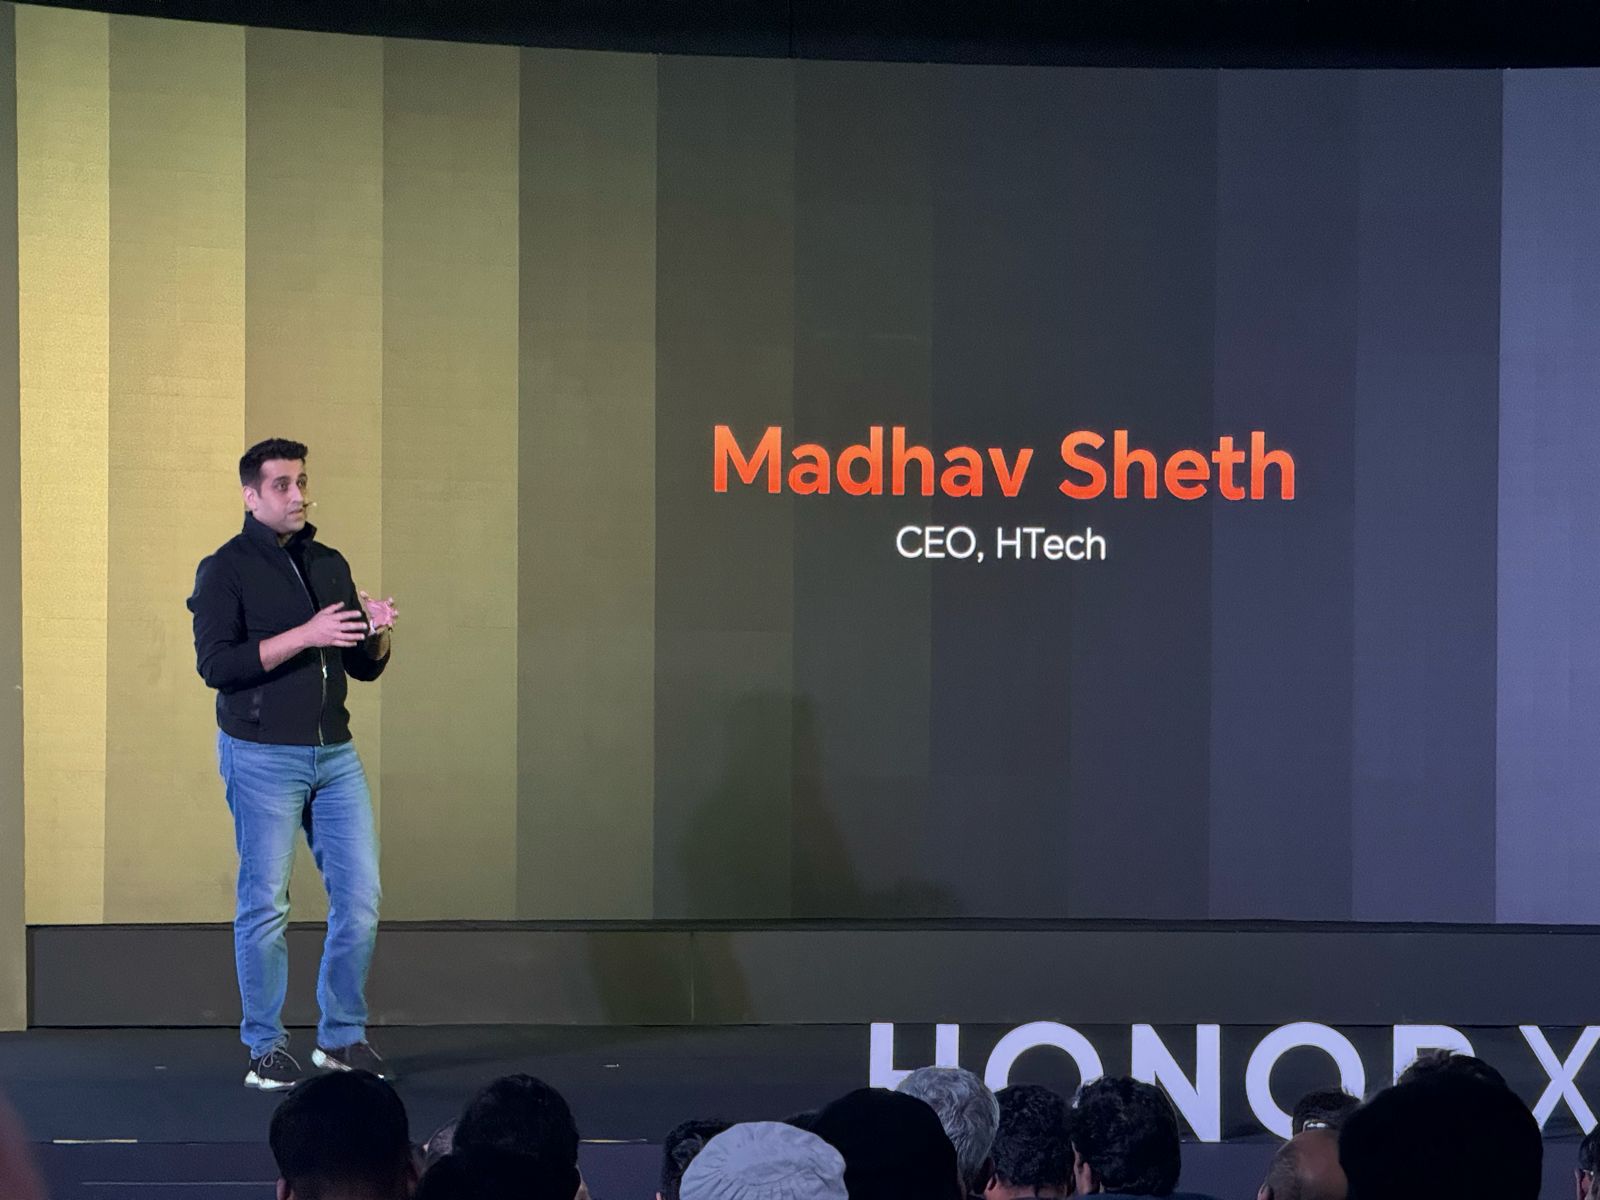 Madhav Sheth unveiling the Honor X9b